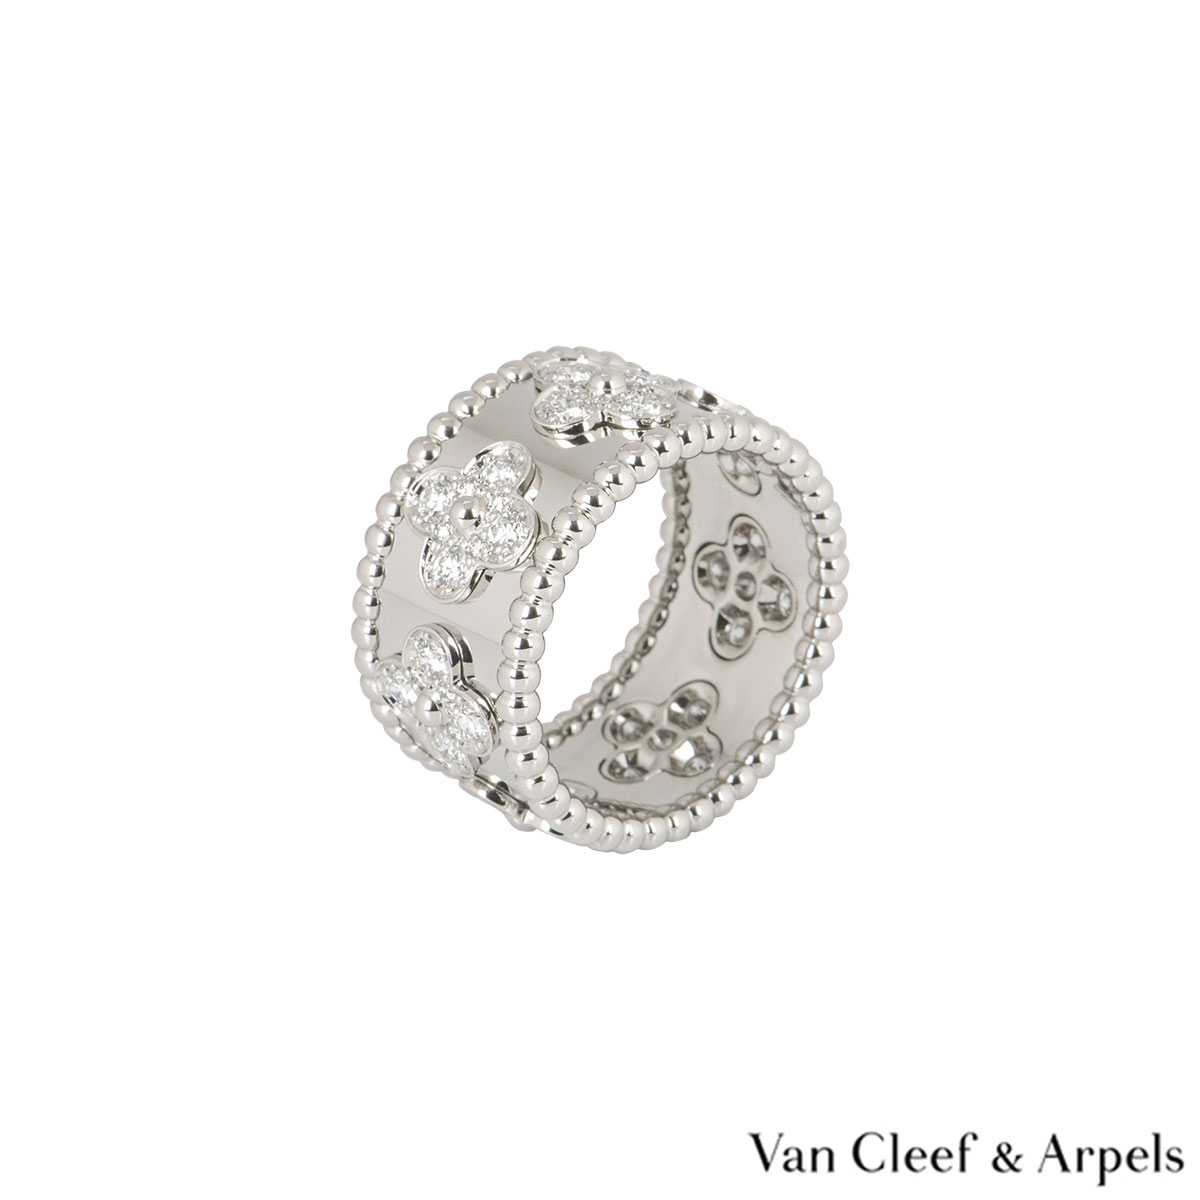 Van Cleef & Arpels 'Perlée' Clovers Ring in 18K Whit #515113